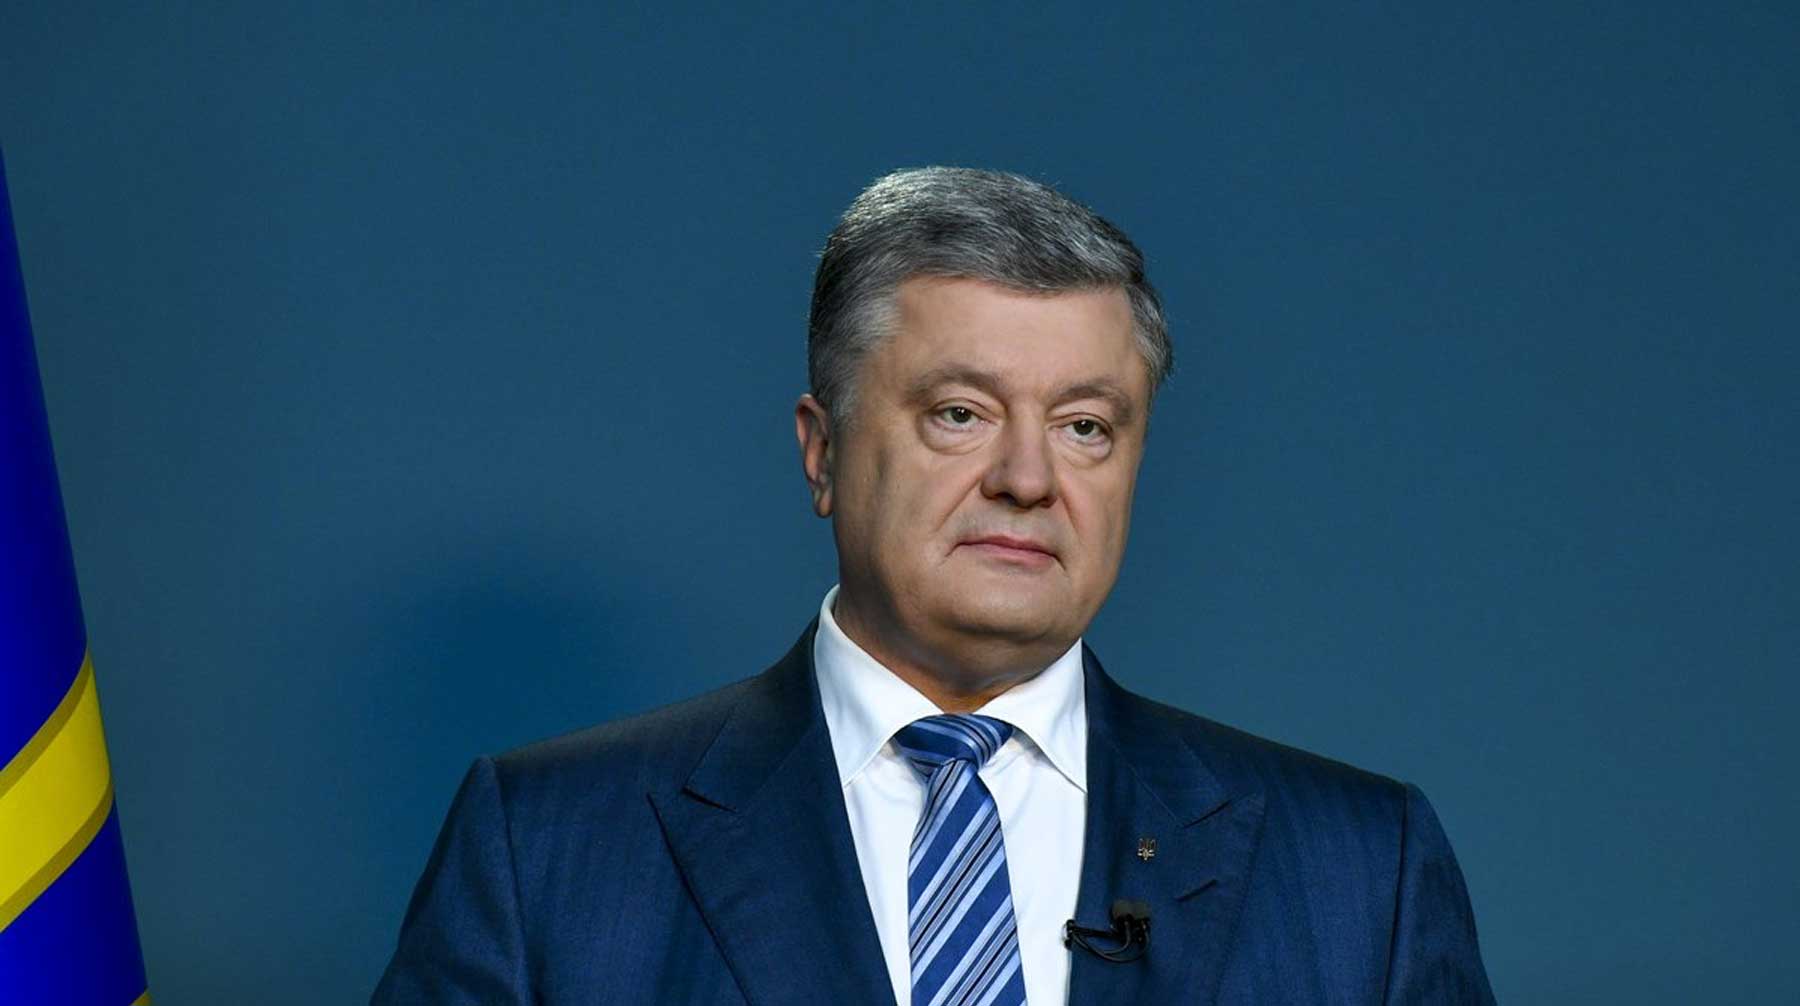 Также от действующего главы государства потребуют подписать протокол допроса 2016 года Фото: © GLOBAL LOOK press / Petro Poroshenko